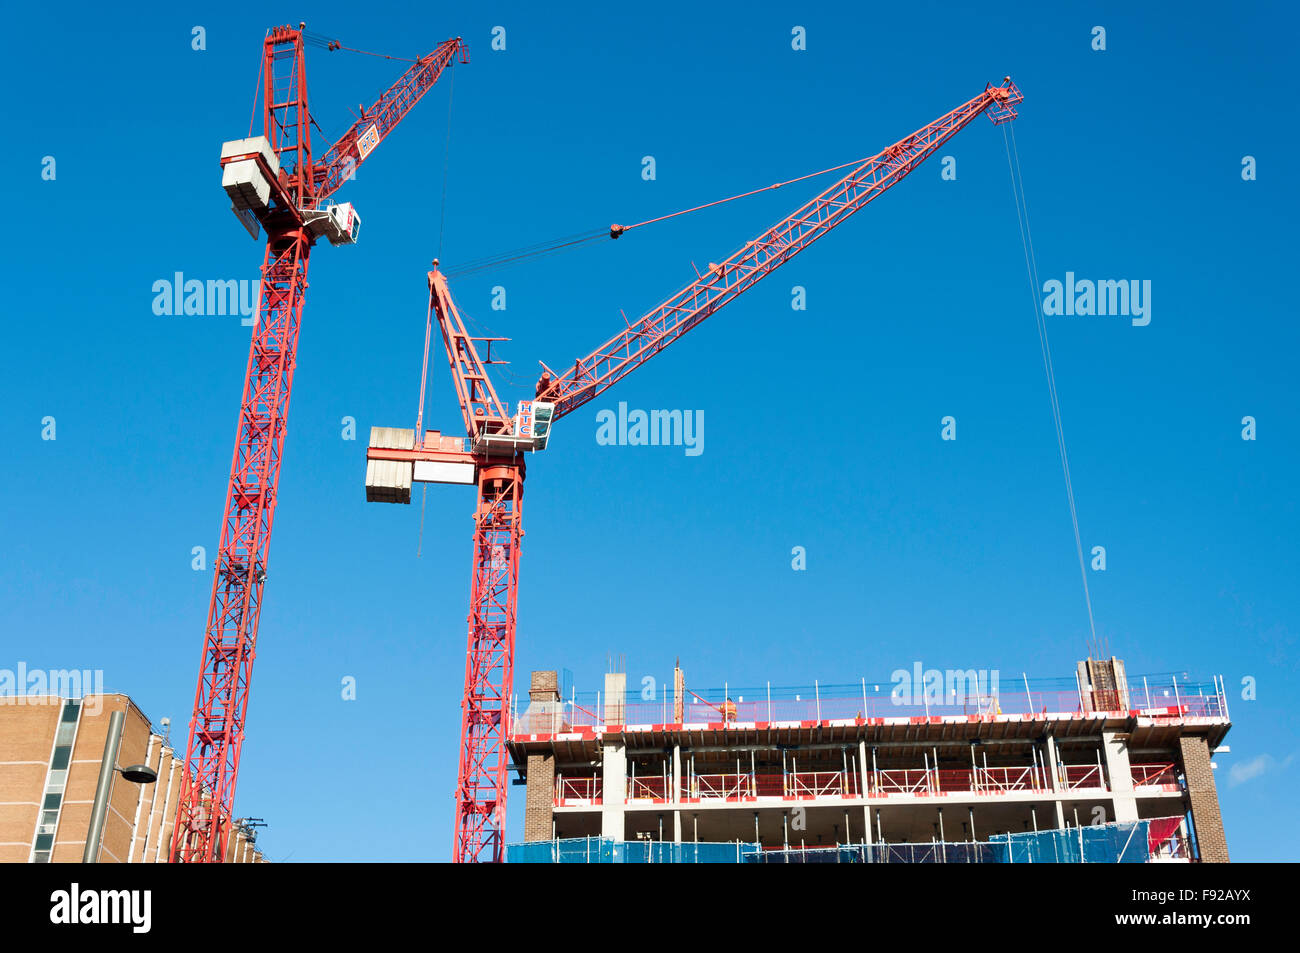 Grandes Grues sur le site de construction, Stratford, Newham Borough, London, Greater London, Angleterre, Royaume-Uni Banque D'Images